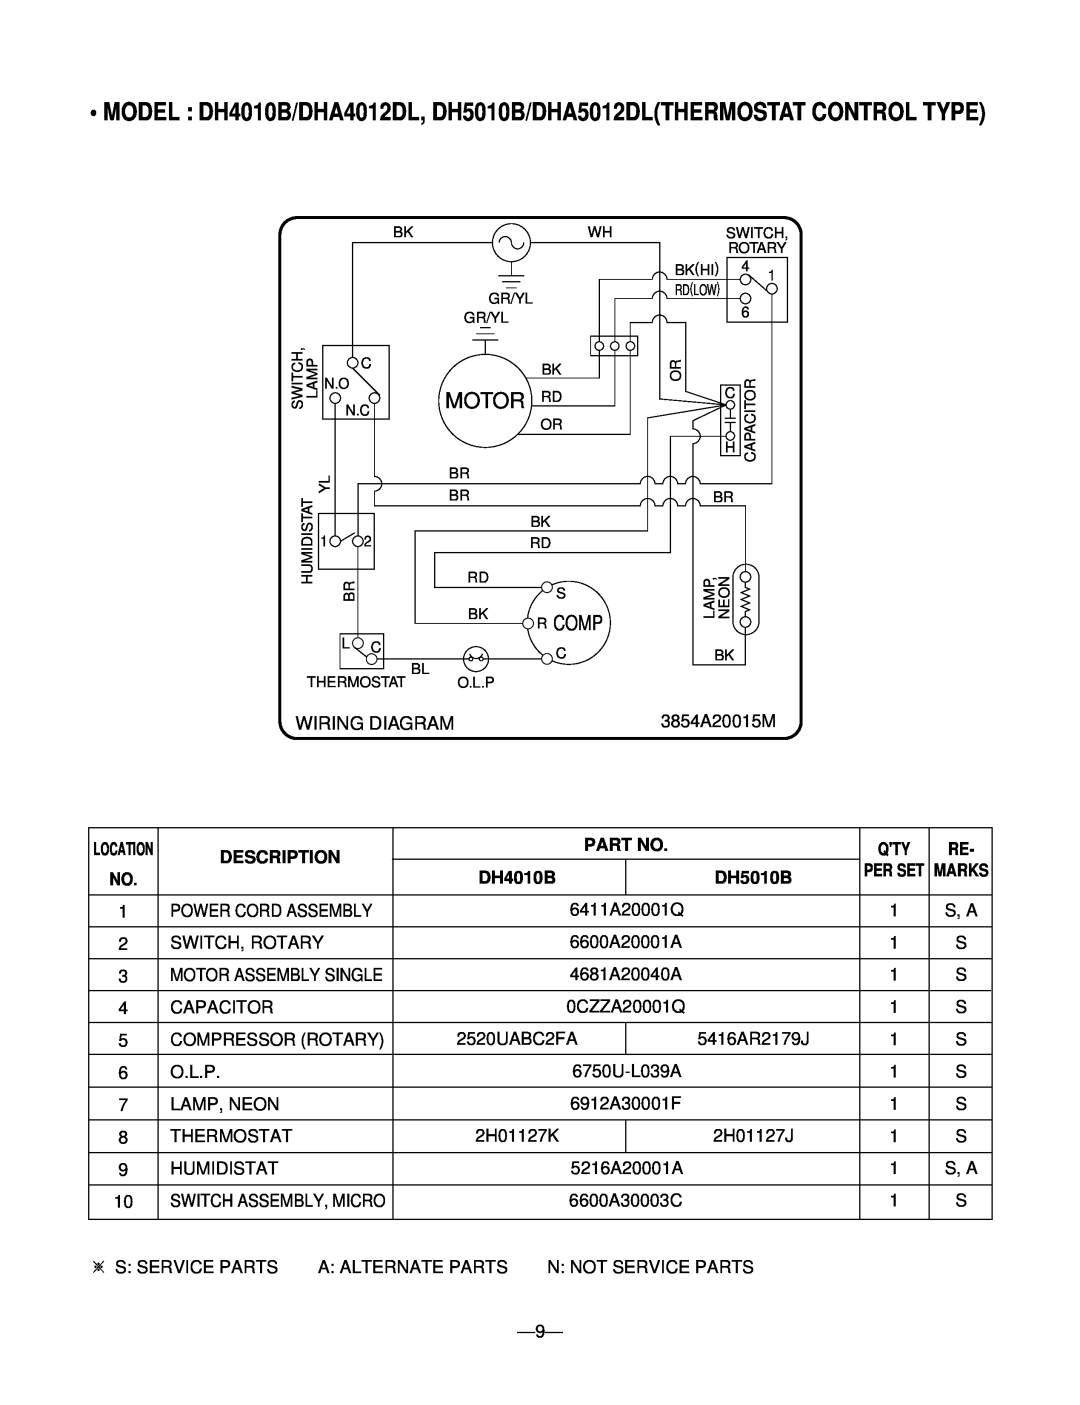 Goldstar DH3010B, DHA4012DL, DHA5012DL, DHA3012DL service manual Wiring Diagram, Motor Rd, Description, DH4010B, DH5010B 